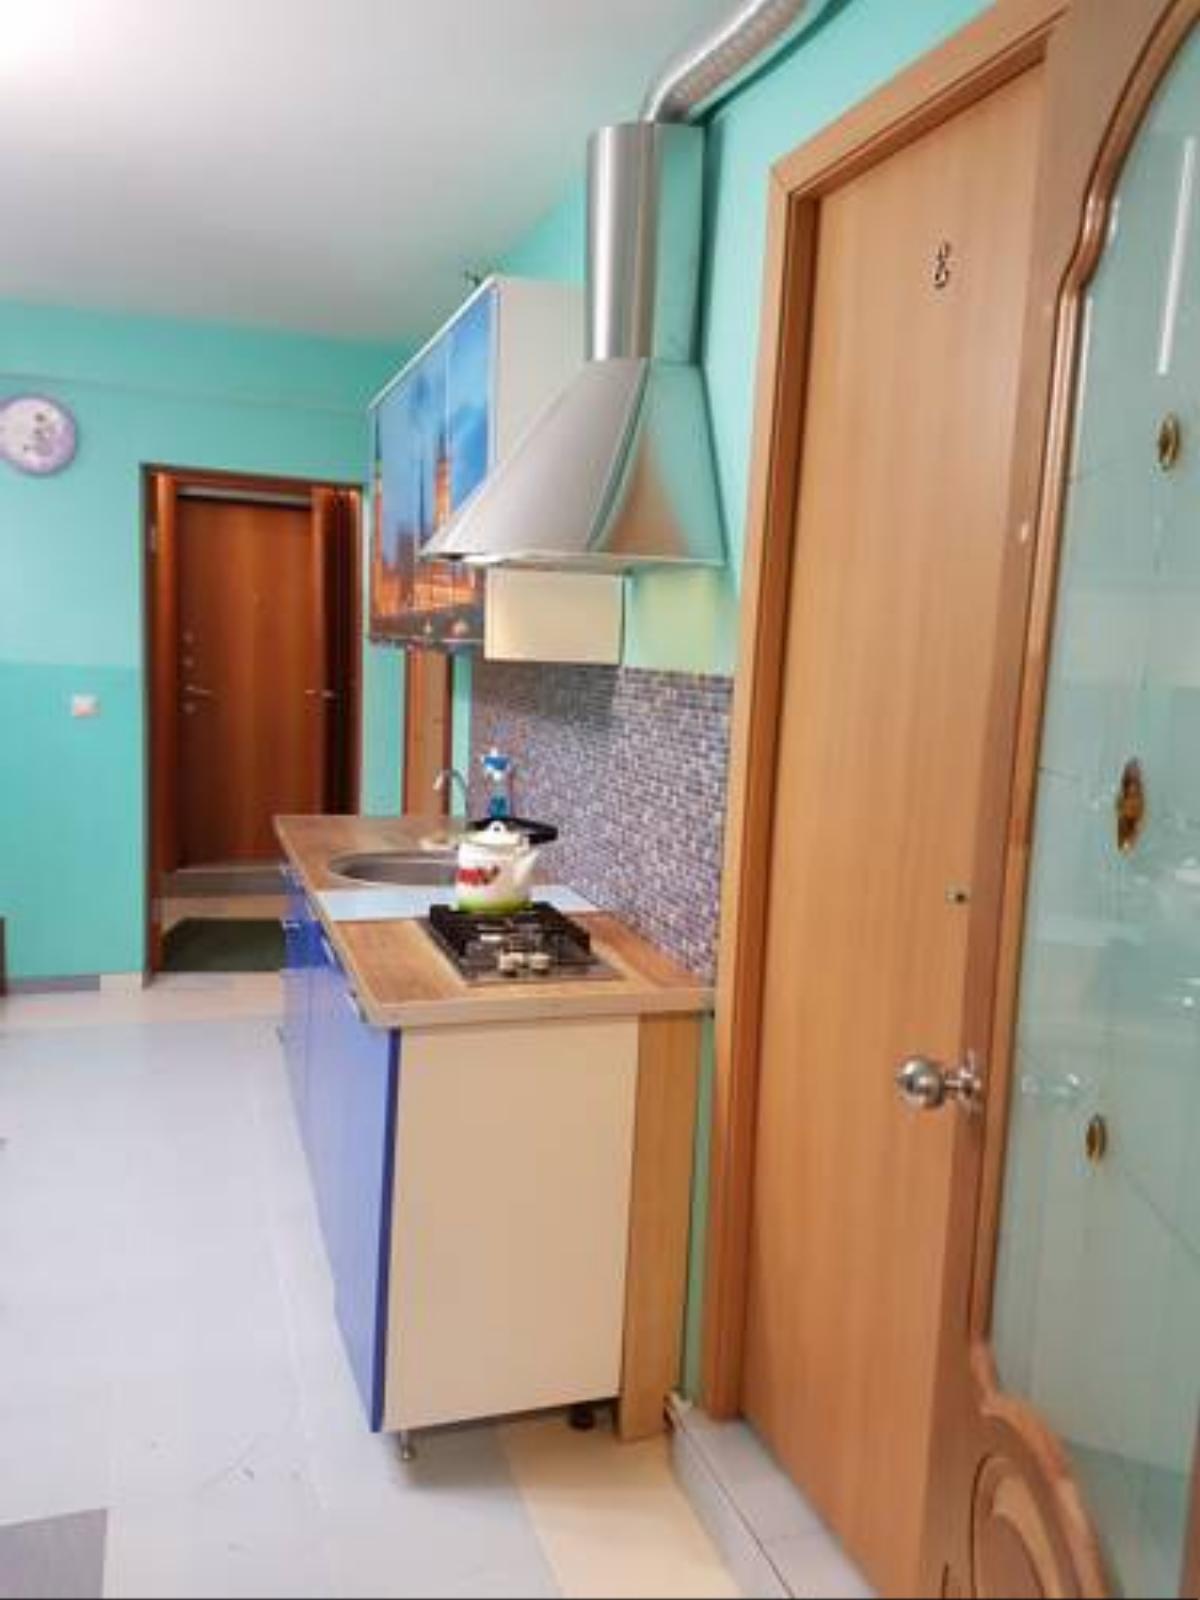 Rooms in Pesochnyy